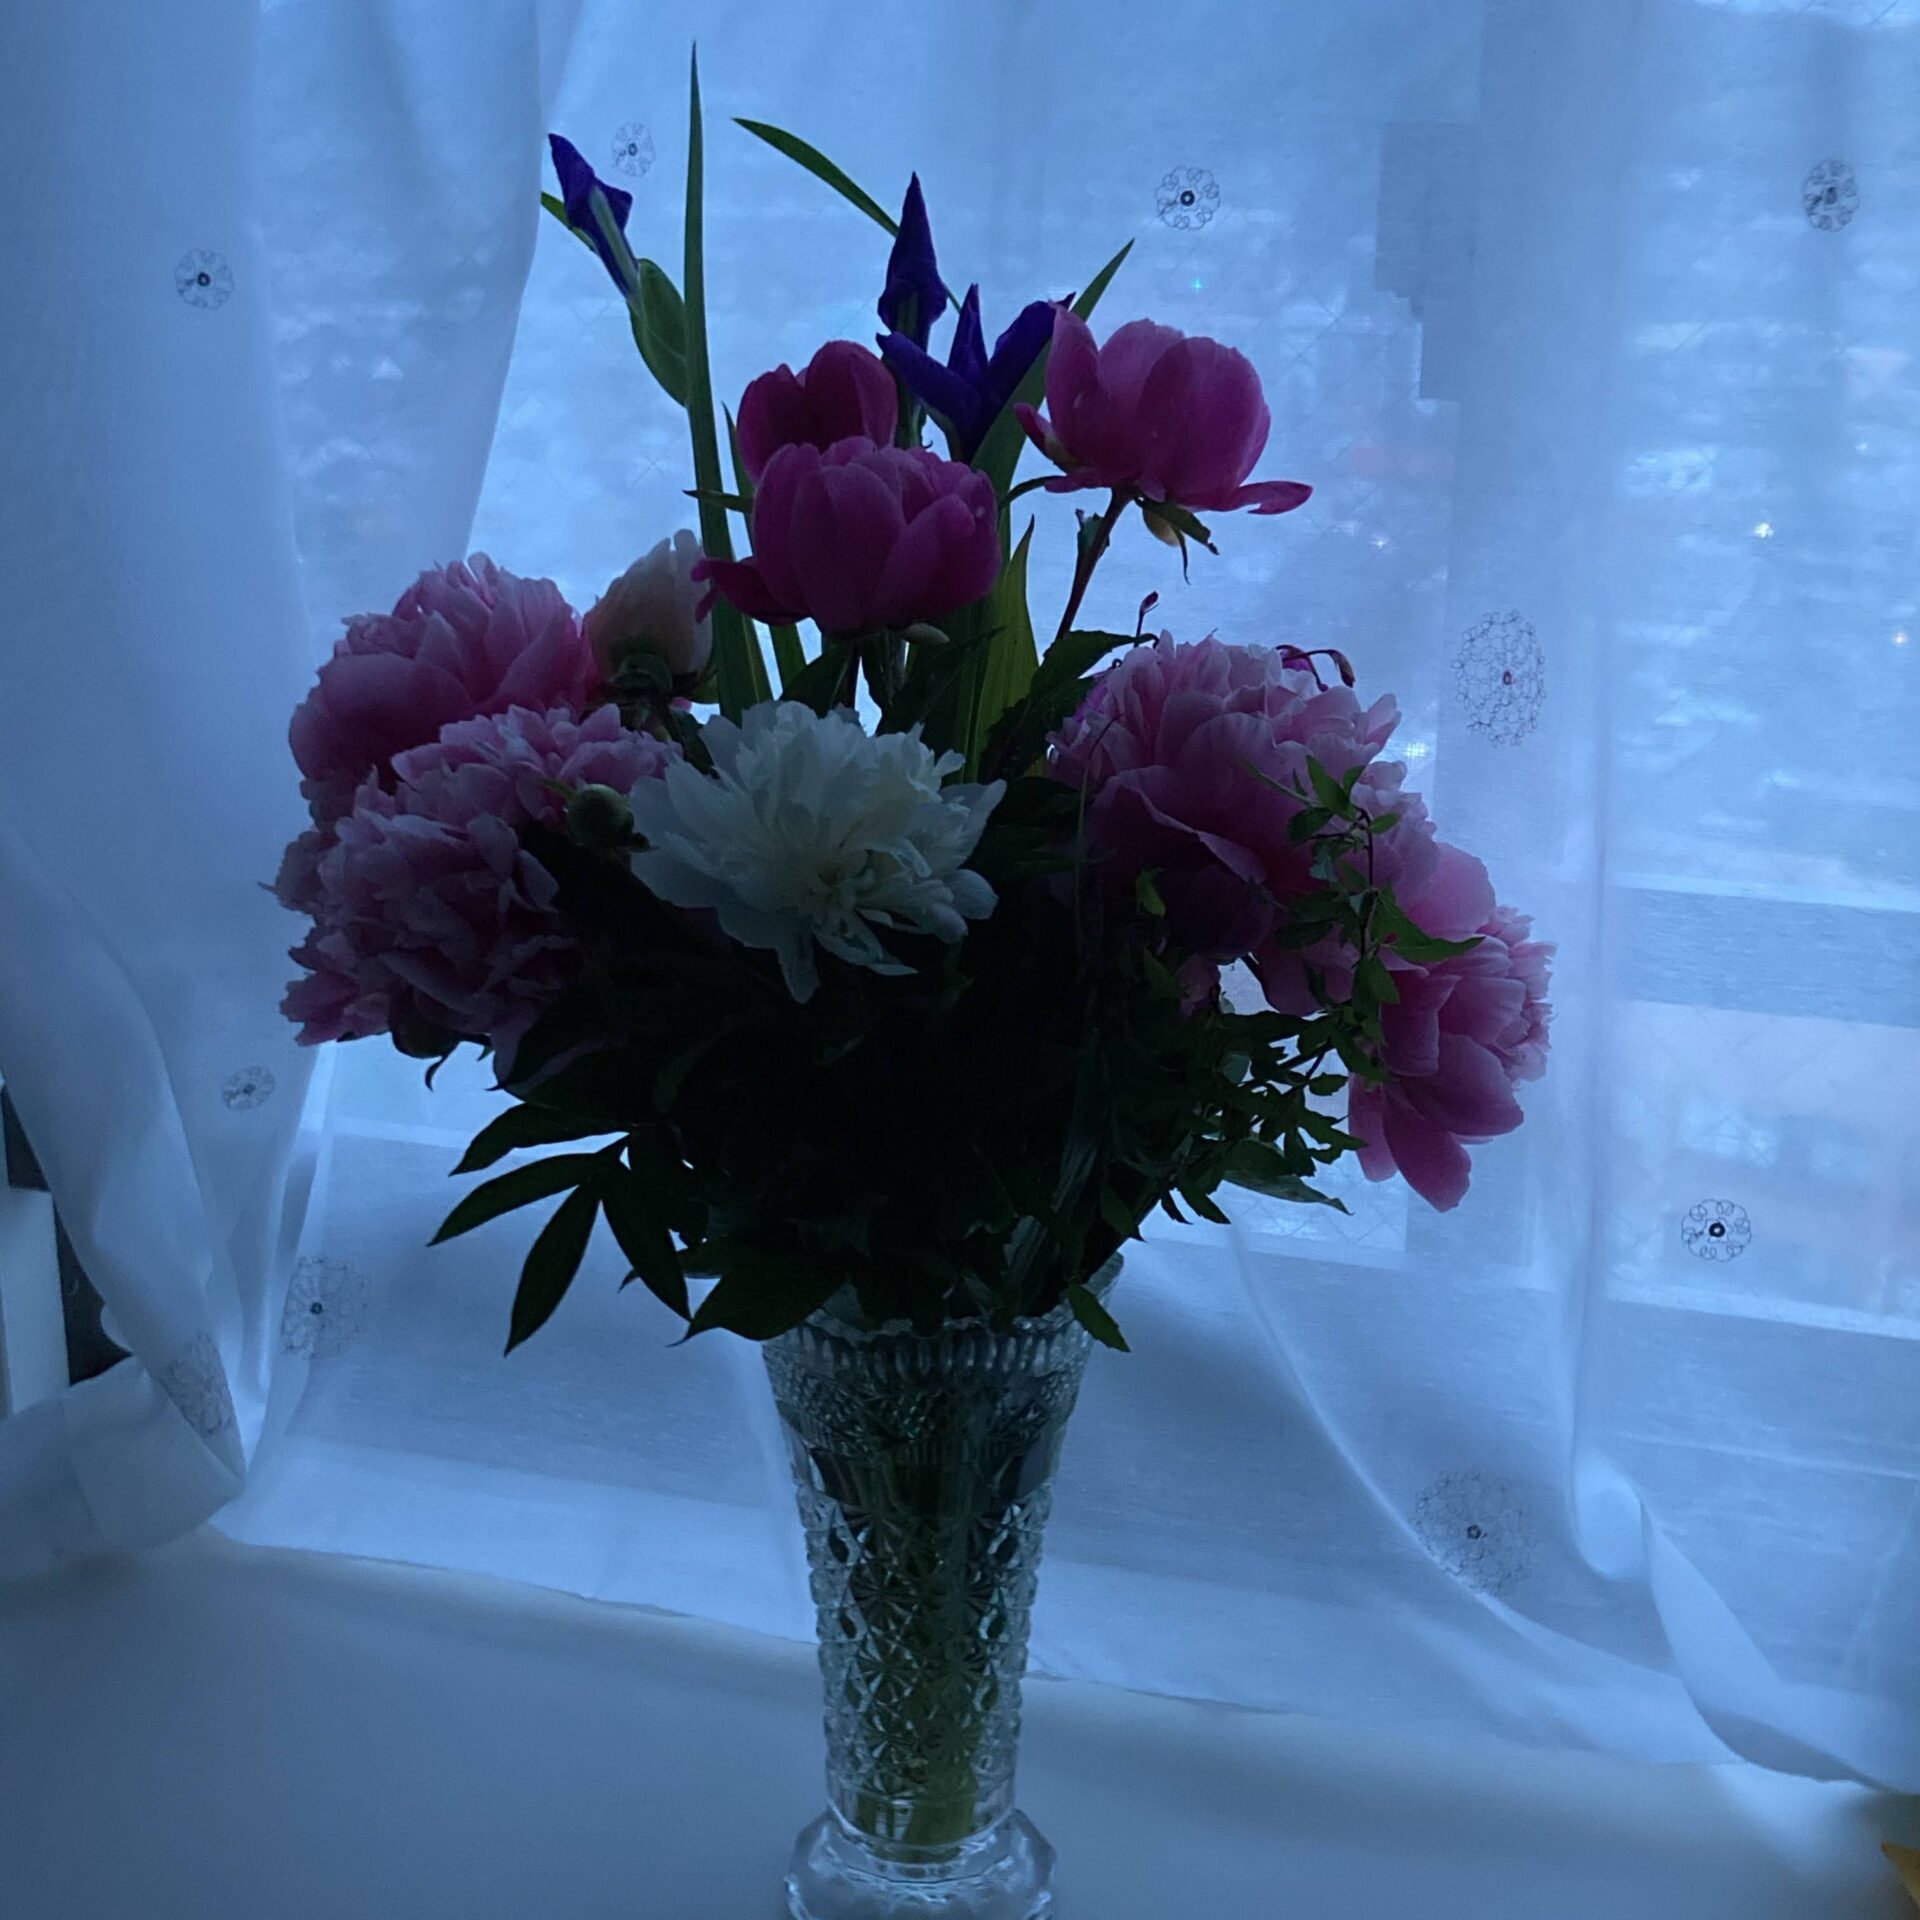 明け方の部屋に飾られた花の写真